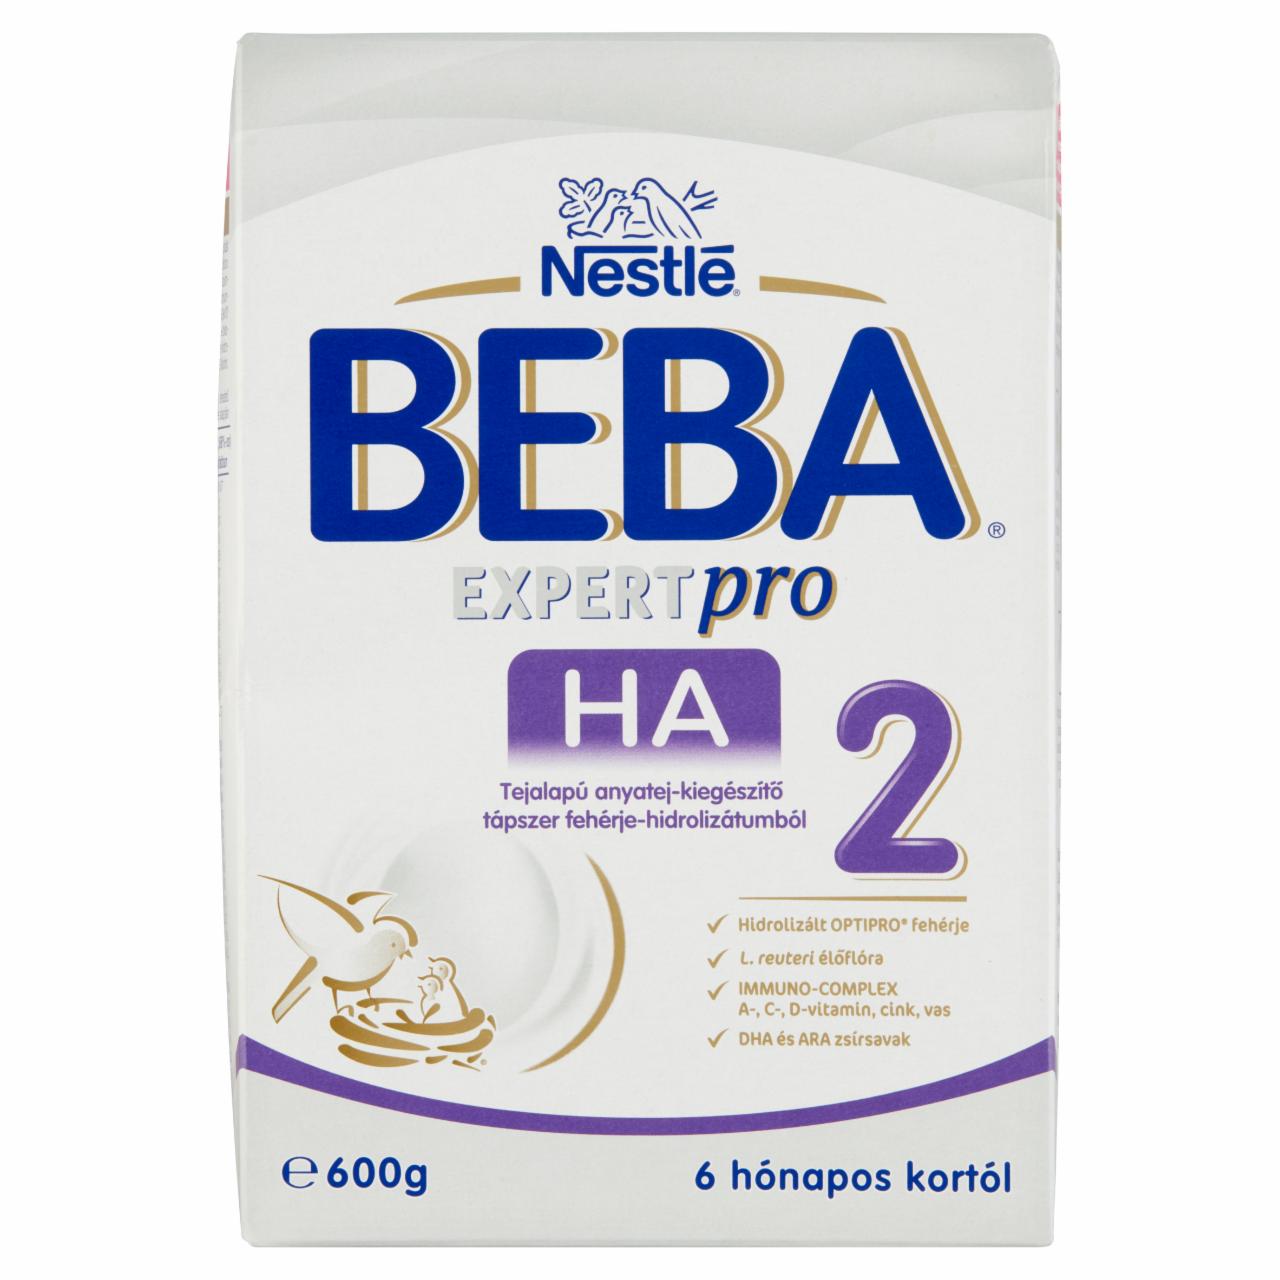 Képek - Beba ExpertPro HA 2 tejalapú anyatej-kiegészítő tápszer 6 hónapos kortól 2 x 300 g (600 g)